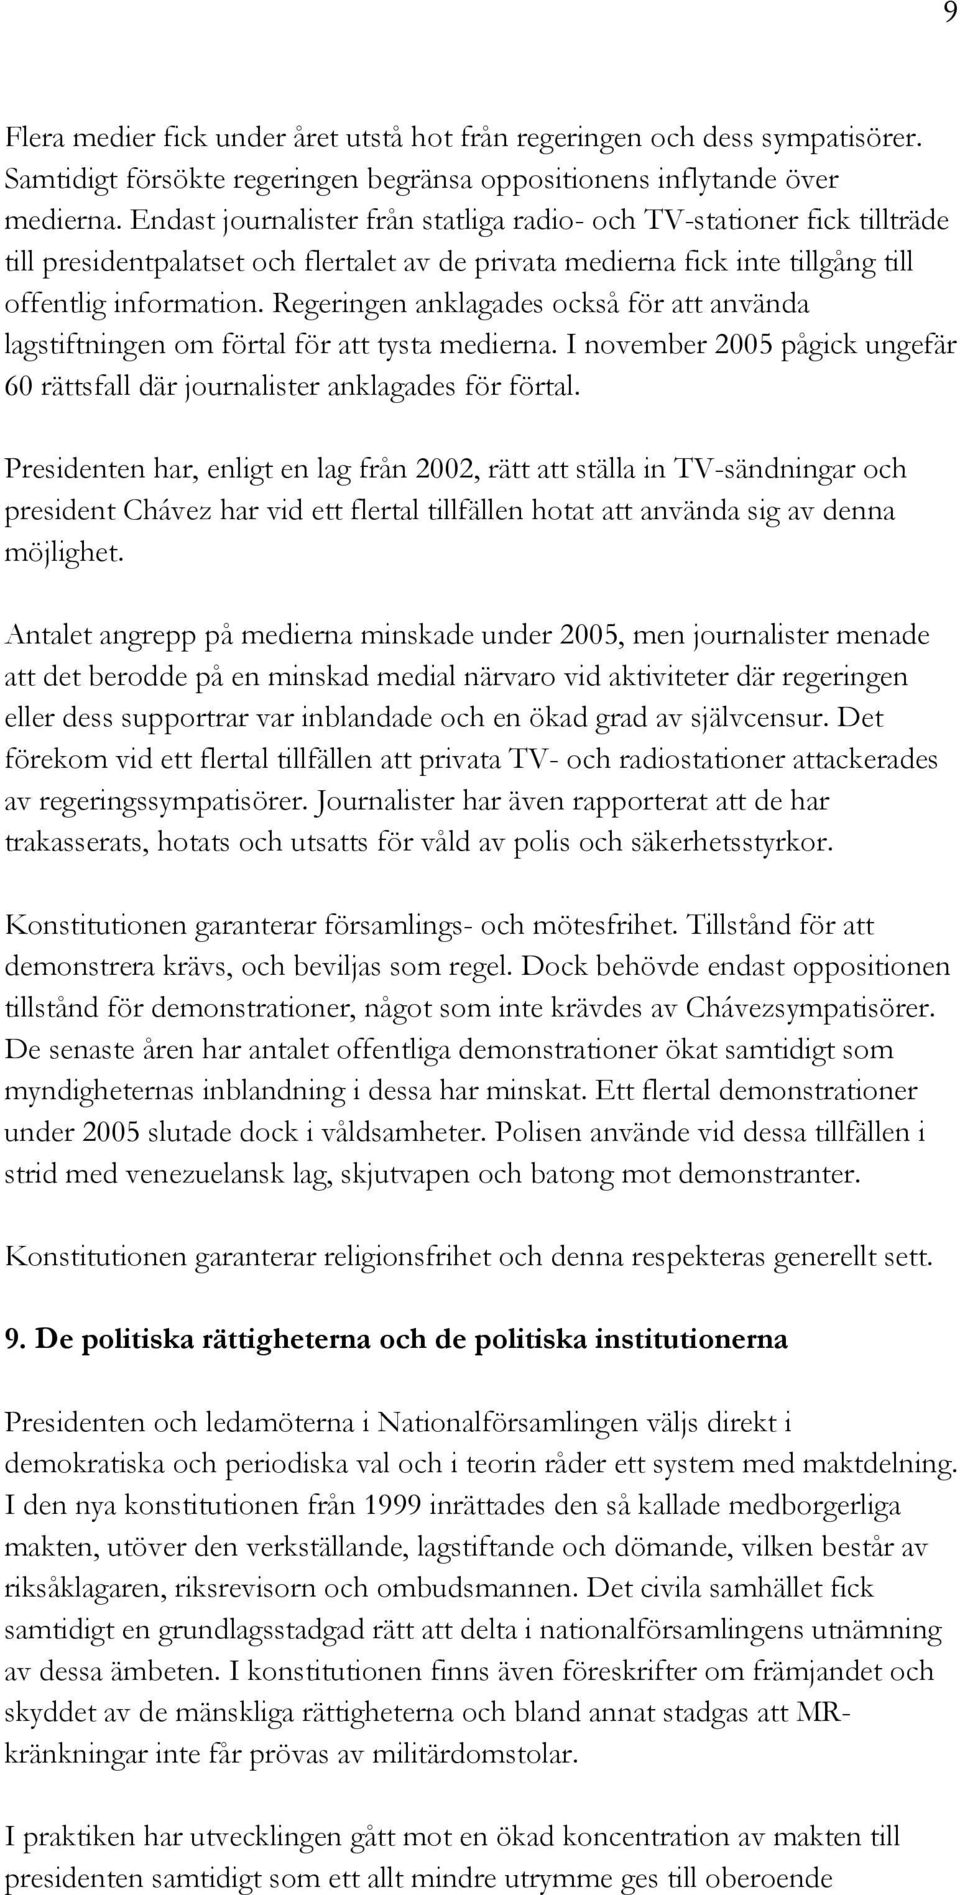 Regeringen anklagades också för att använda lagstiftningen om förtal för att tysta medierna. I november 2005 pågick ungefär 60 rättsfall där journalister anklagades för förtal.